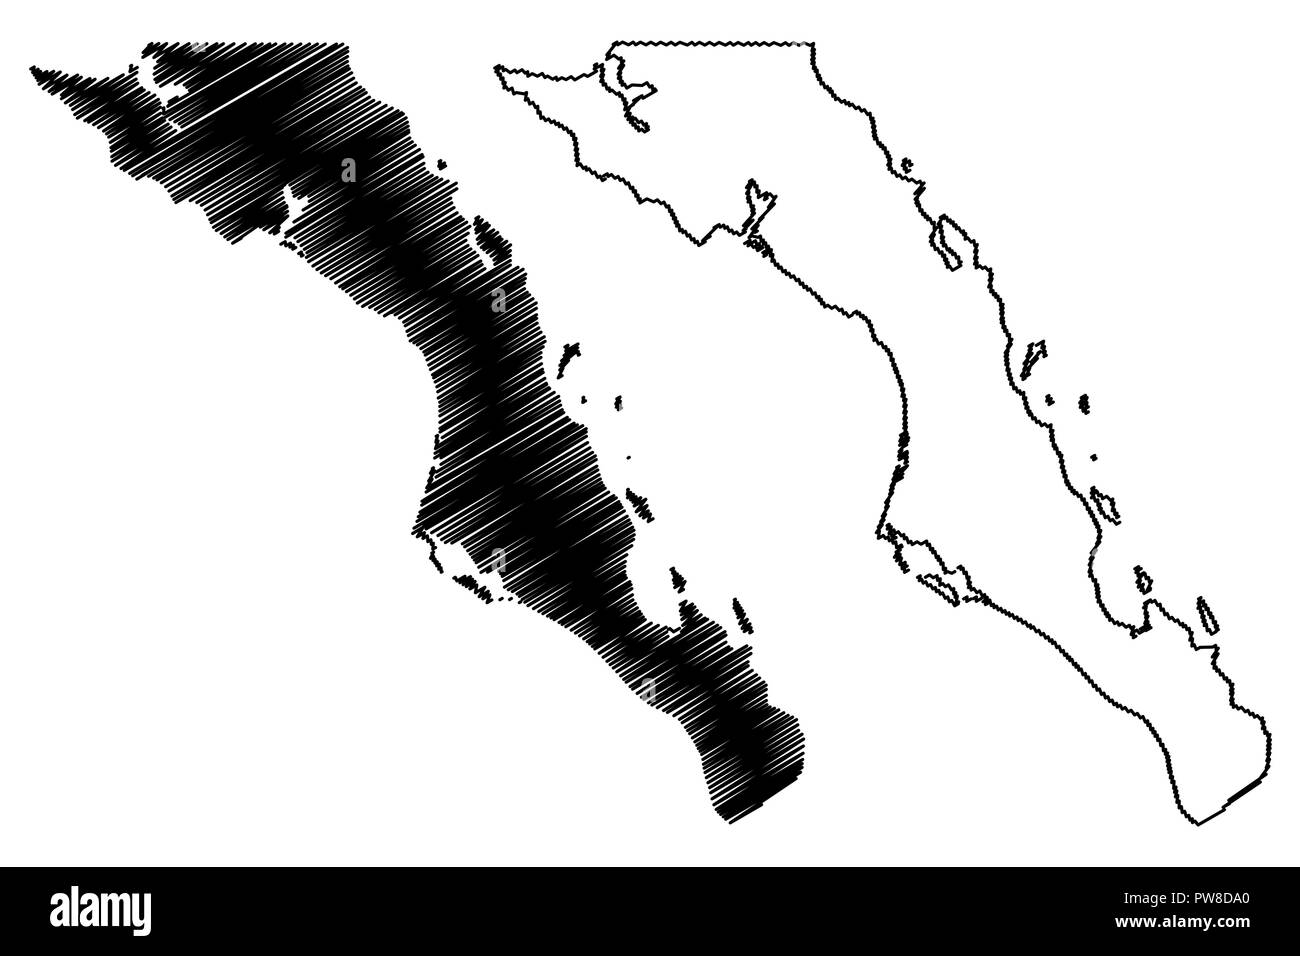 Baja California Sur (United Mexican States, Mexico, federal republic) map vector illustration, scribble sketch Estado Libre y Soberano de Baja Califor Stock Vector